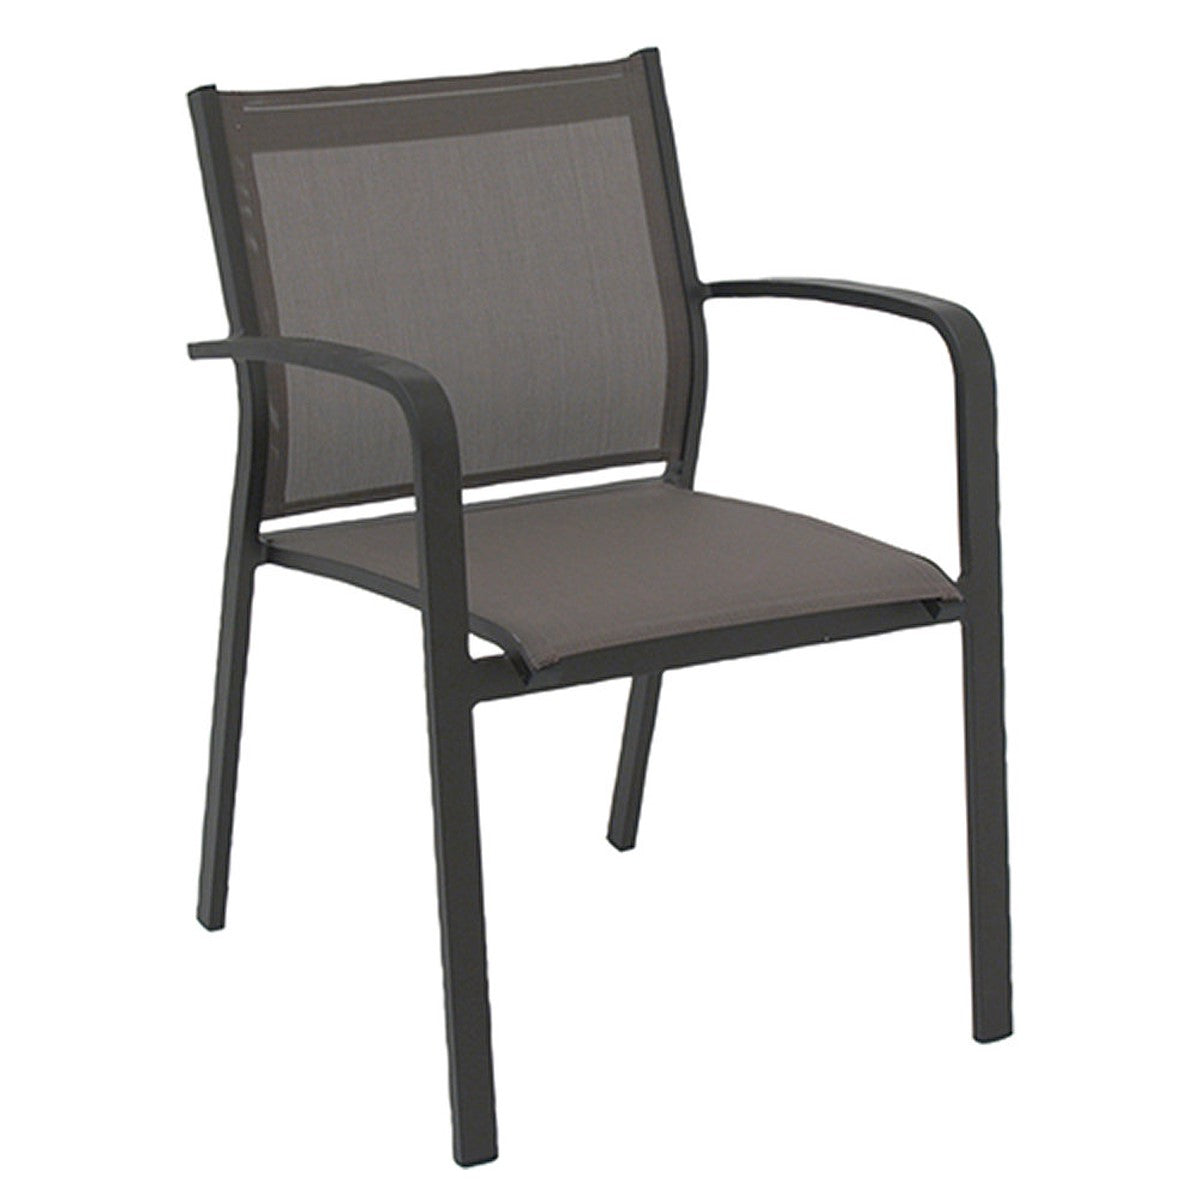 Aluminium Chair GALLIS